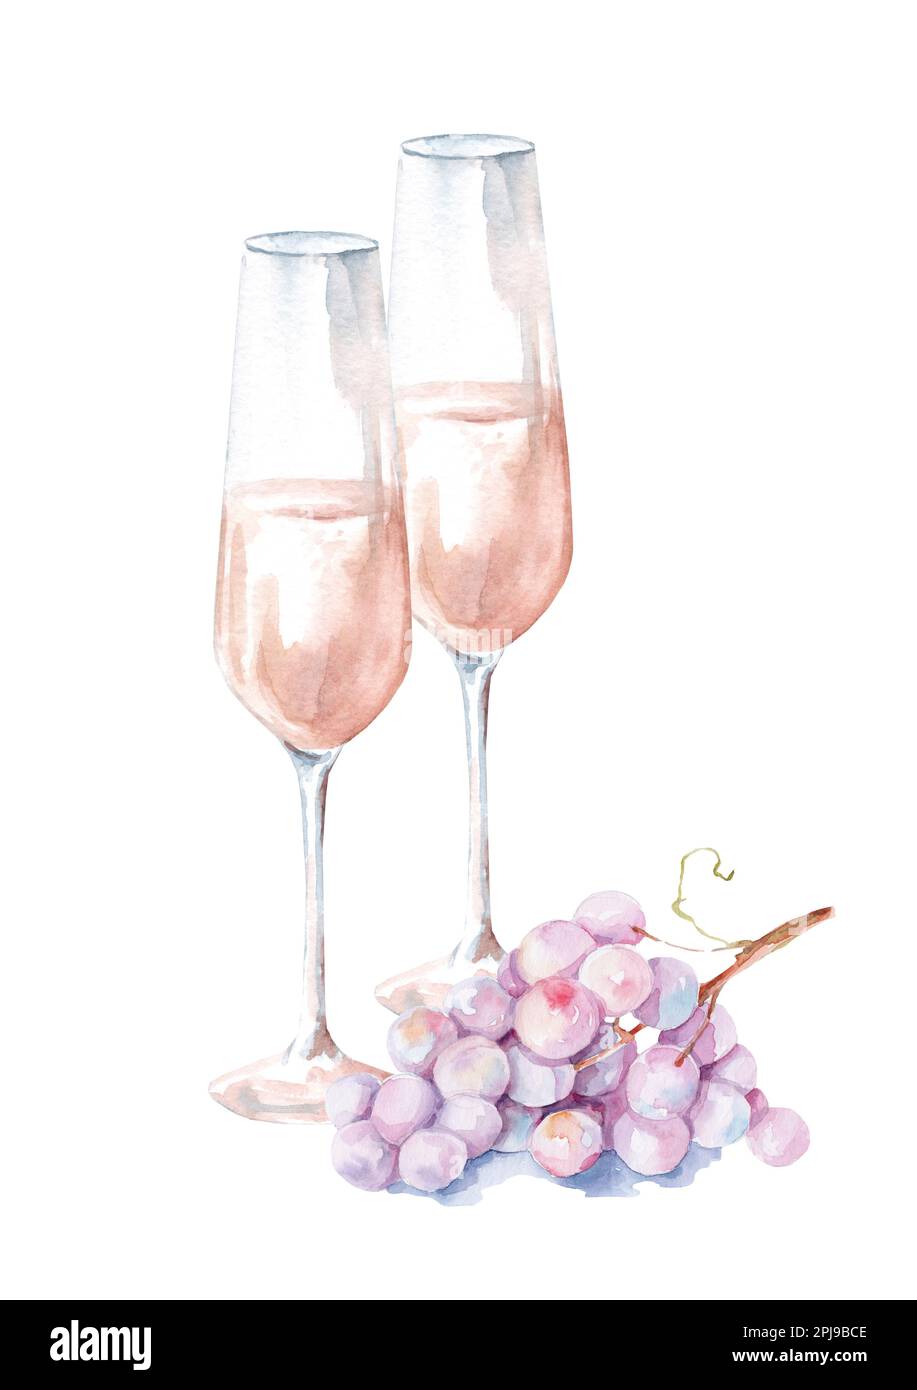 Deux verres de champagne et de raisin rose frais. Aquarelle illustration dessinée à la main isolée sur fond blanc. Banque D'Images